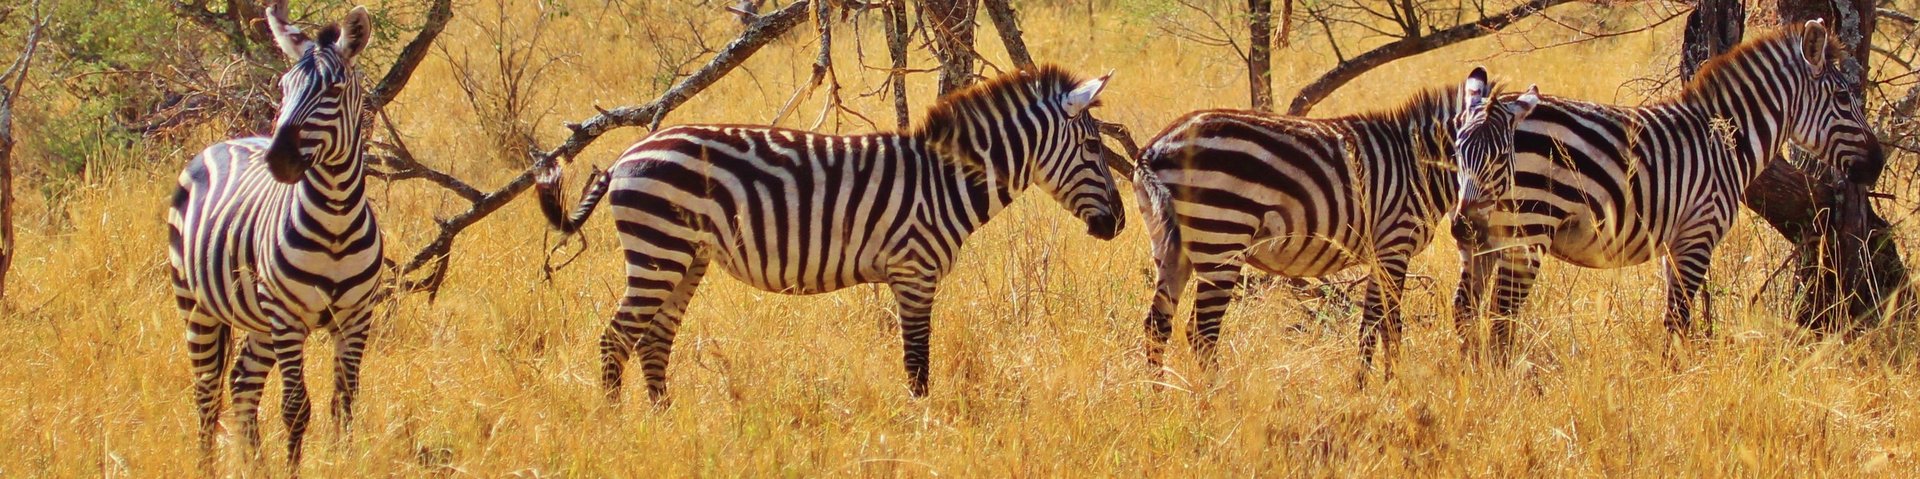 Eine Gruppe Zebras stehen im dürren Gras in Tansania